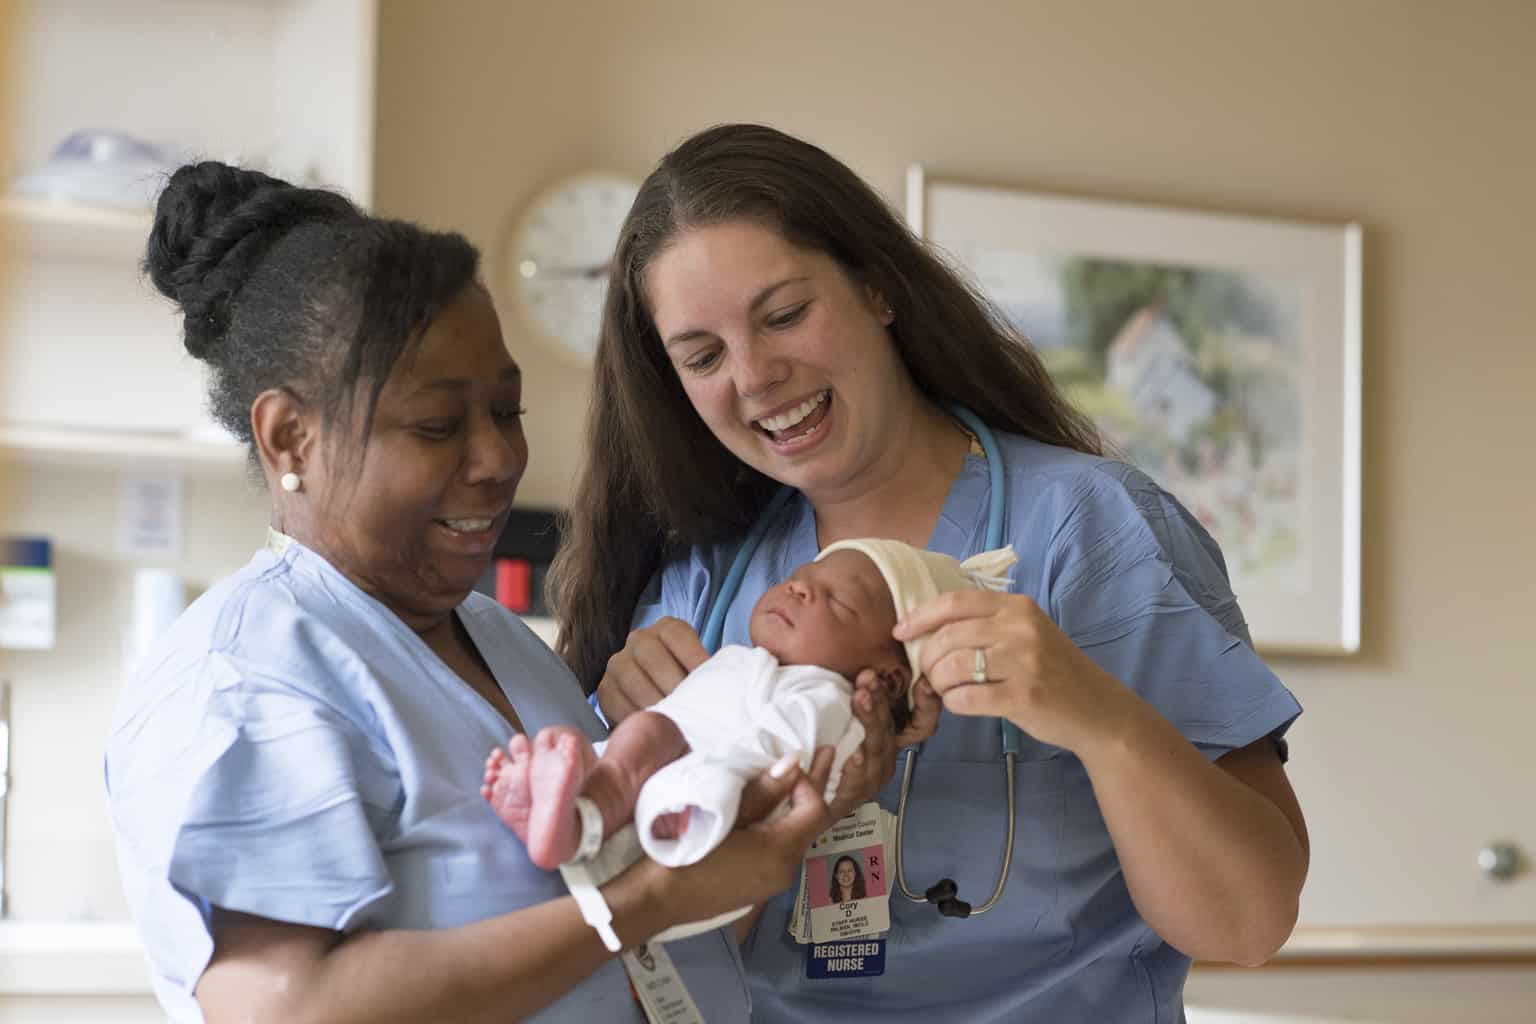 birth center staff with newborn baby